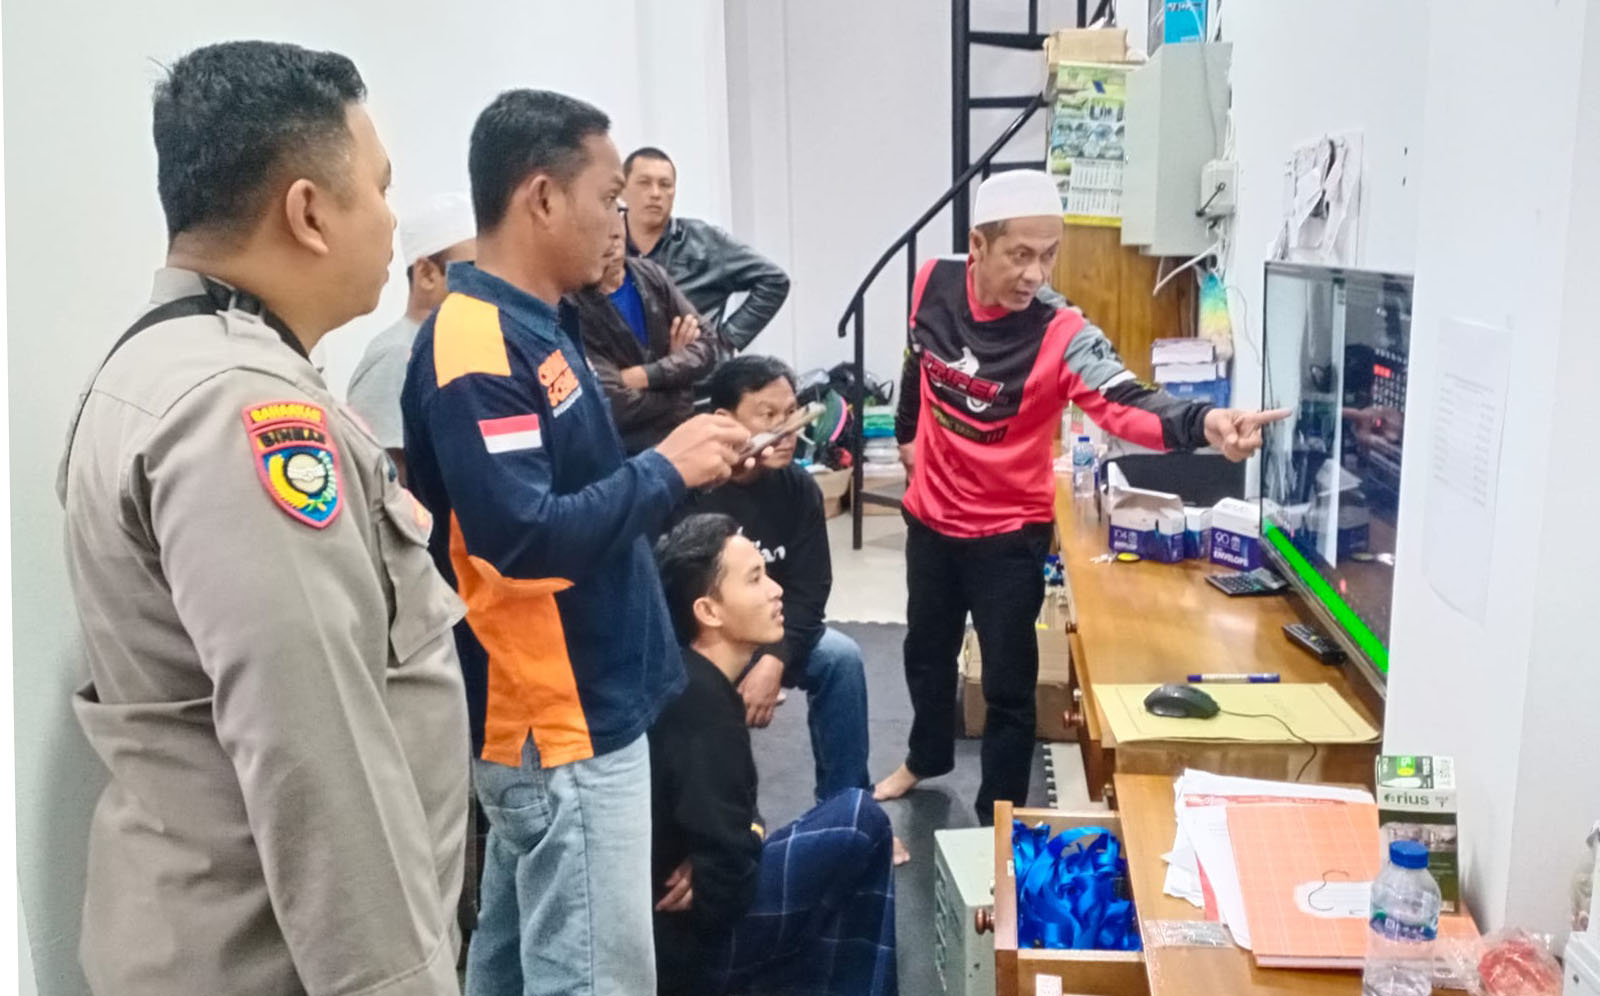 Keterlaluan, 2 Pencuri Bawa Uang Anak Yatim di Masjid Lampung Barat, Aksinya Terekam CCTV